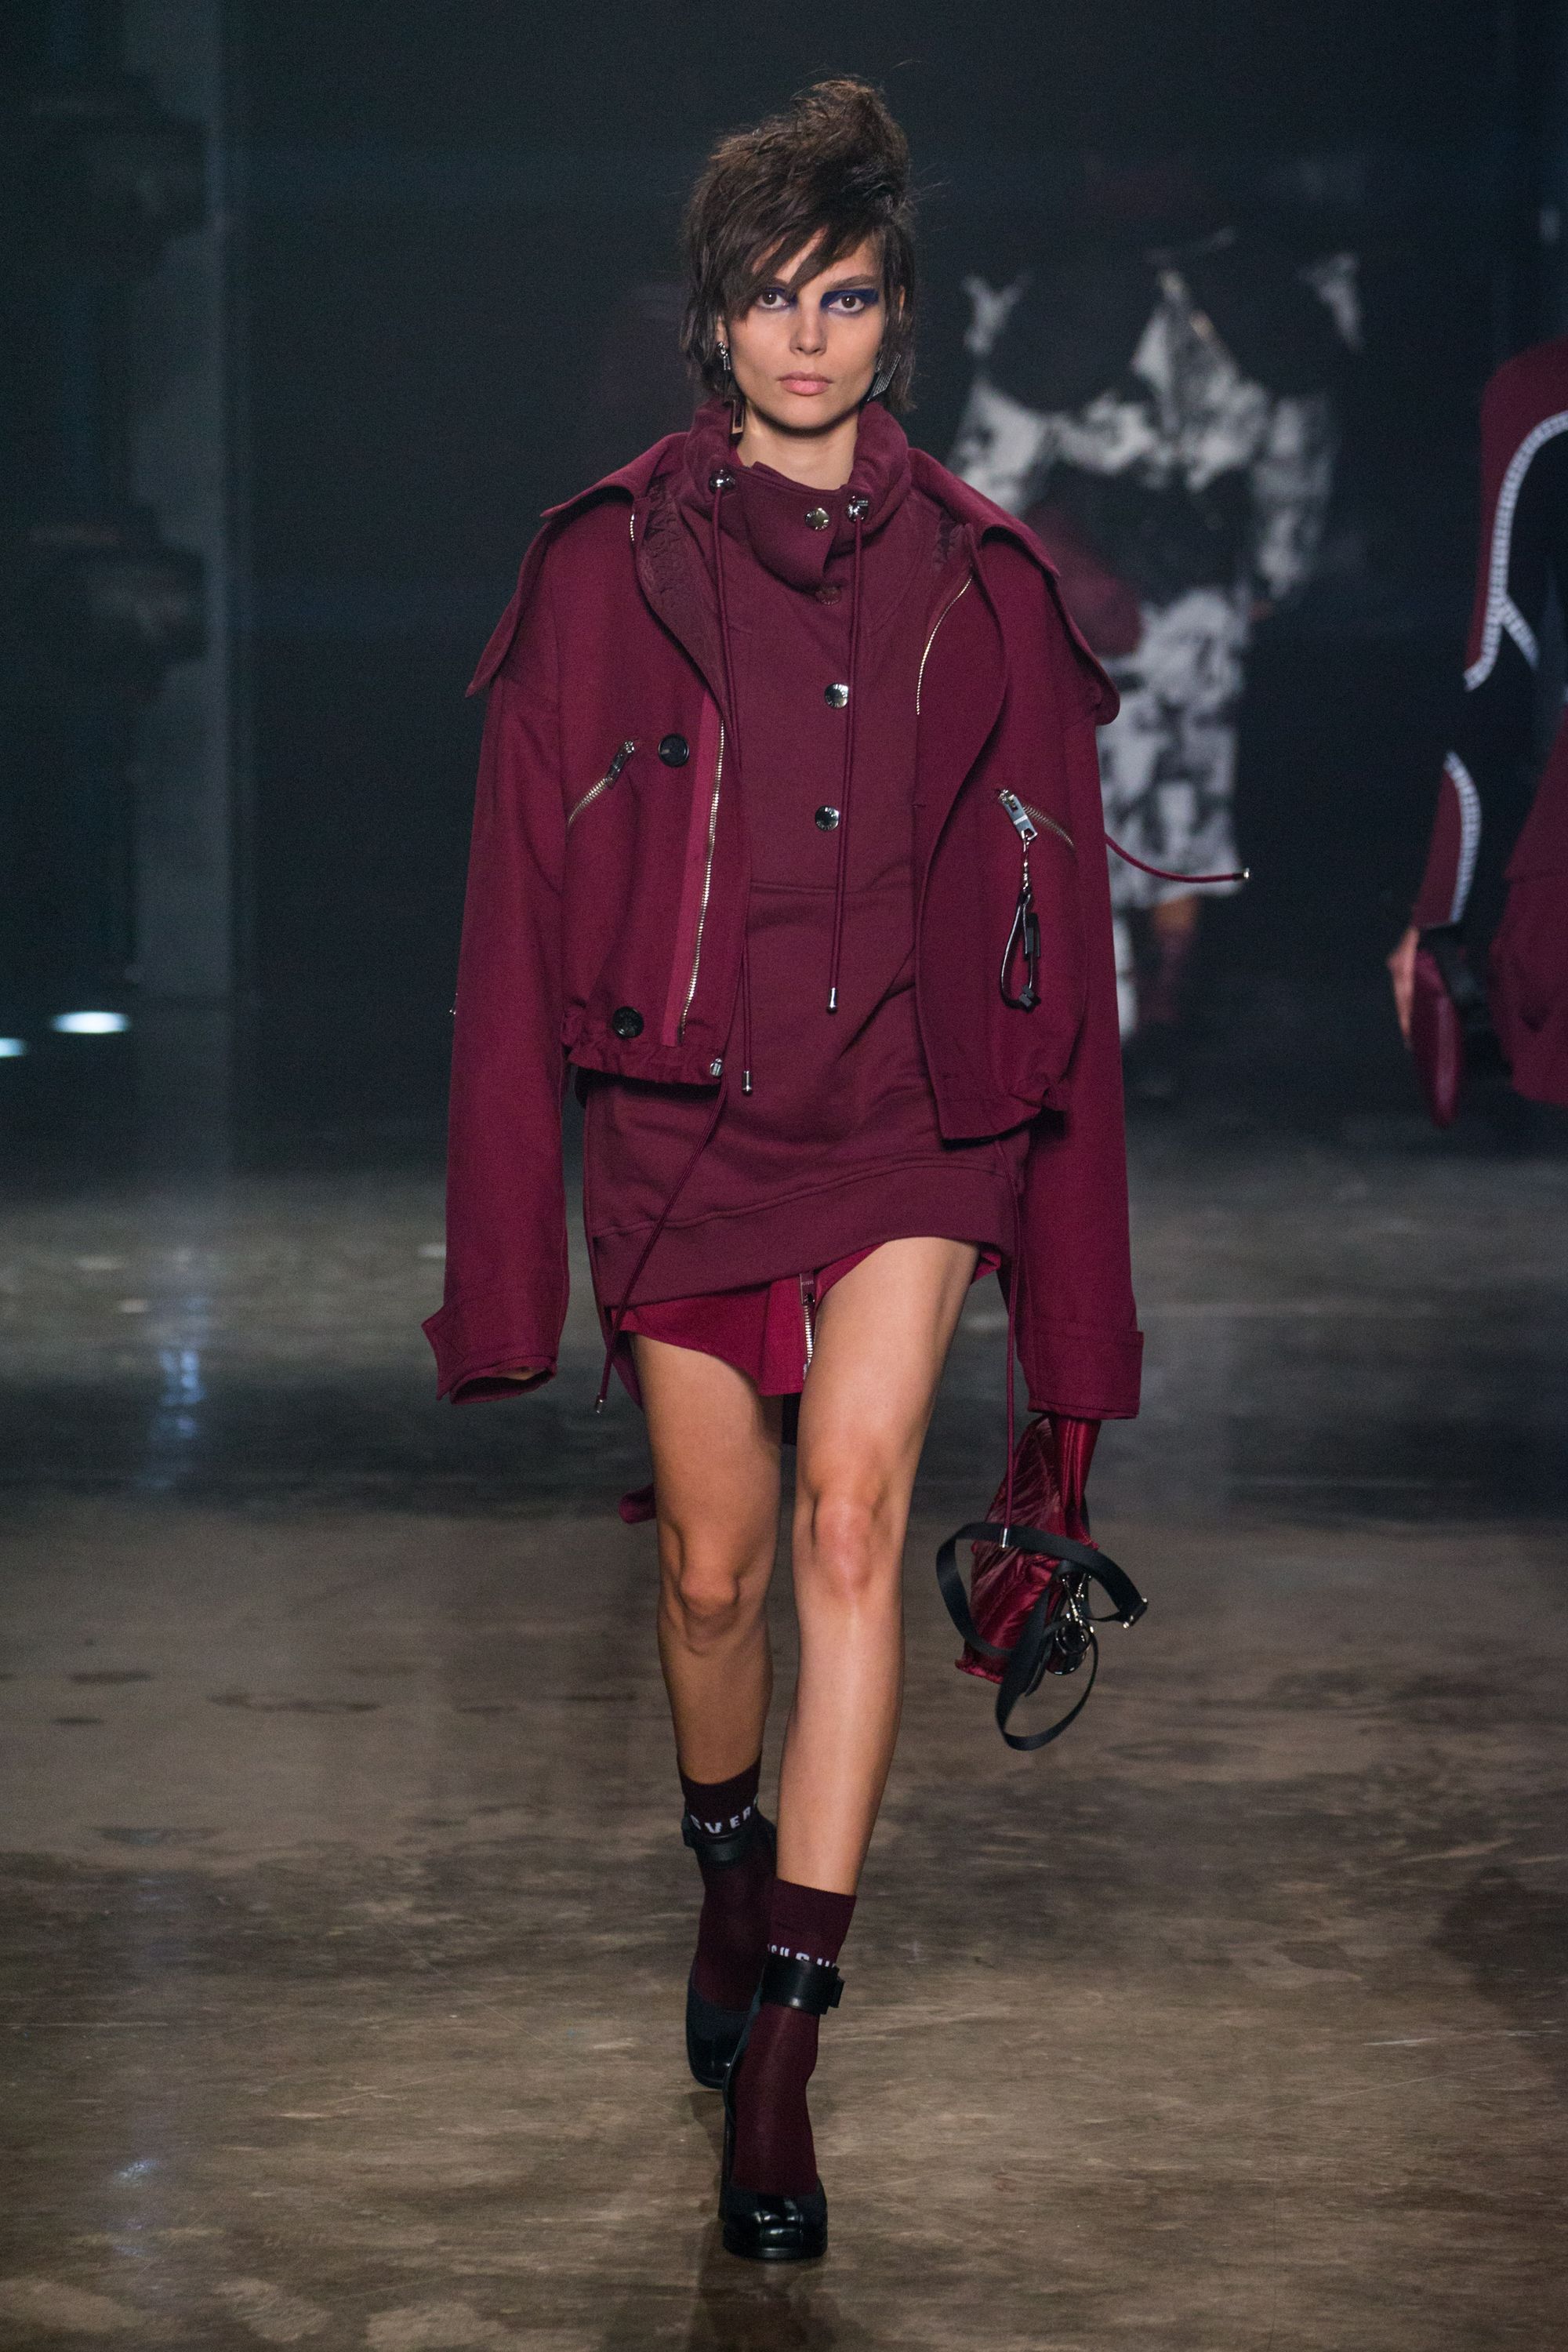 Emilio Pucci F/W 17 womenswear #21 - Tagwalk: The Fashion Search